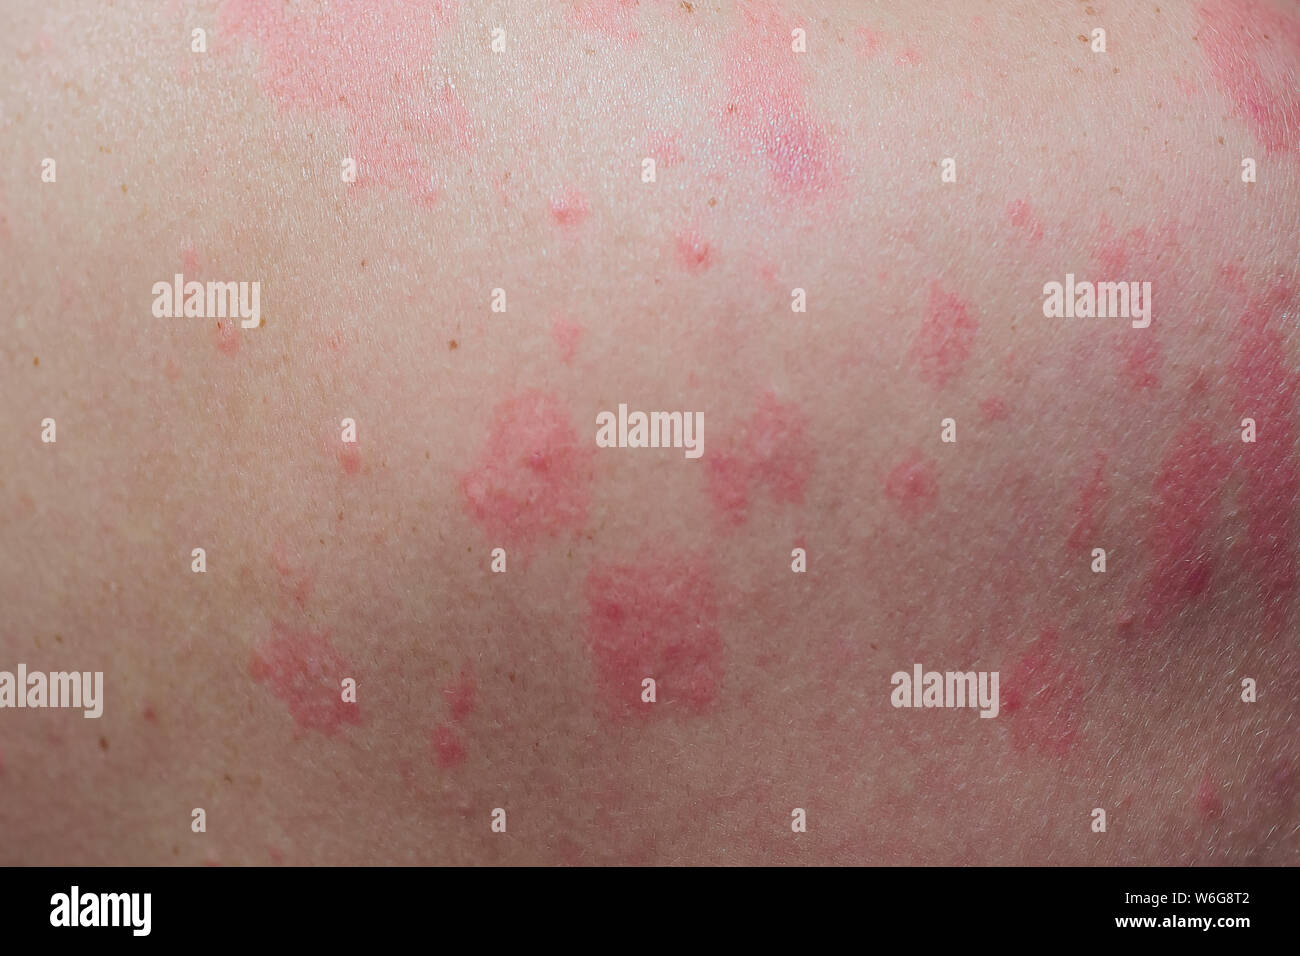 Allergie Nüsse Hautausschlag